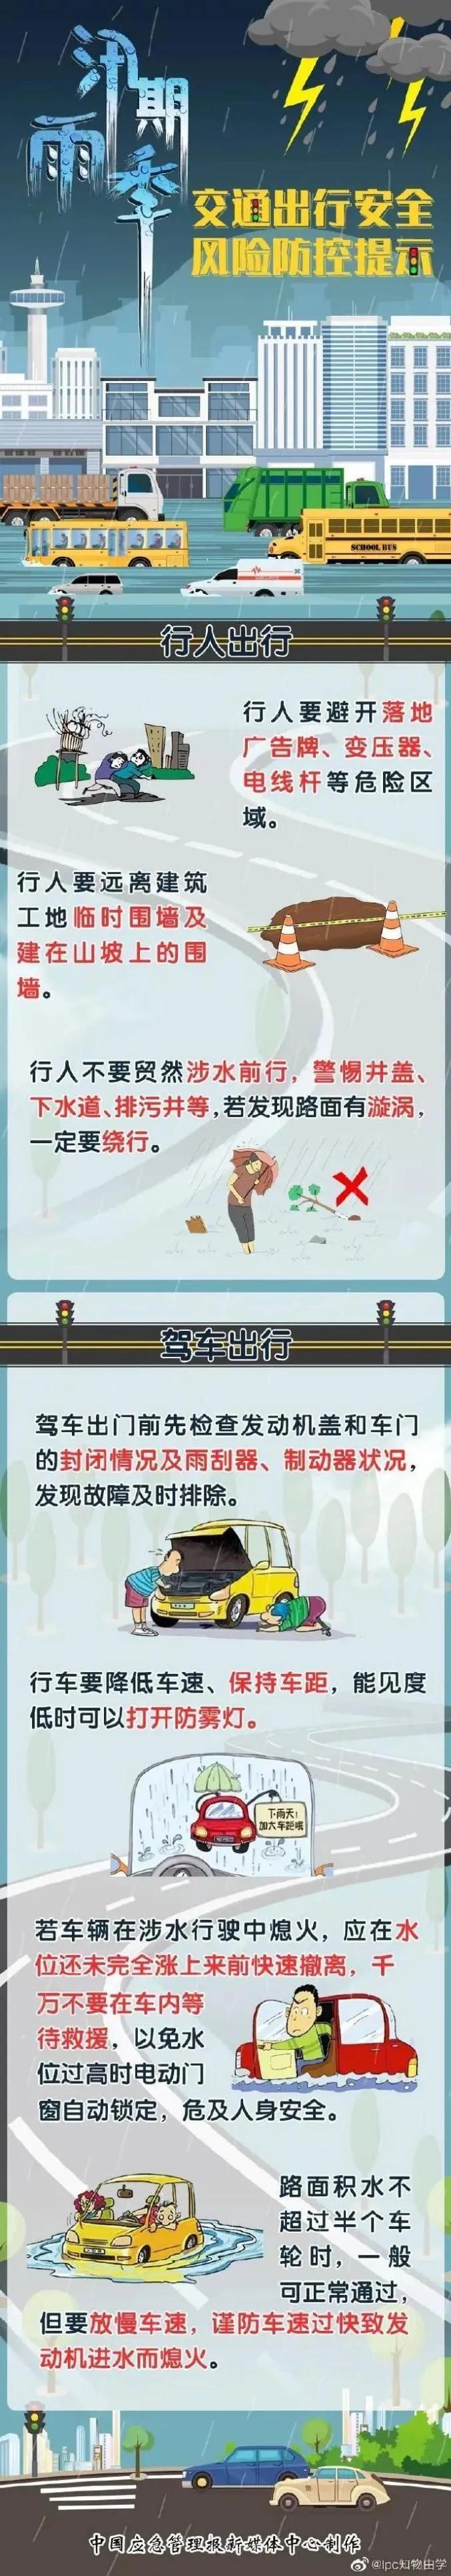 咸宁市长江江段全线超警戒水位